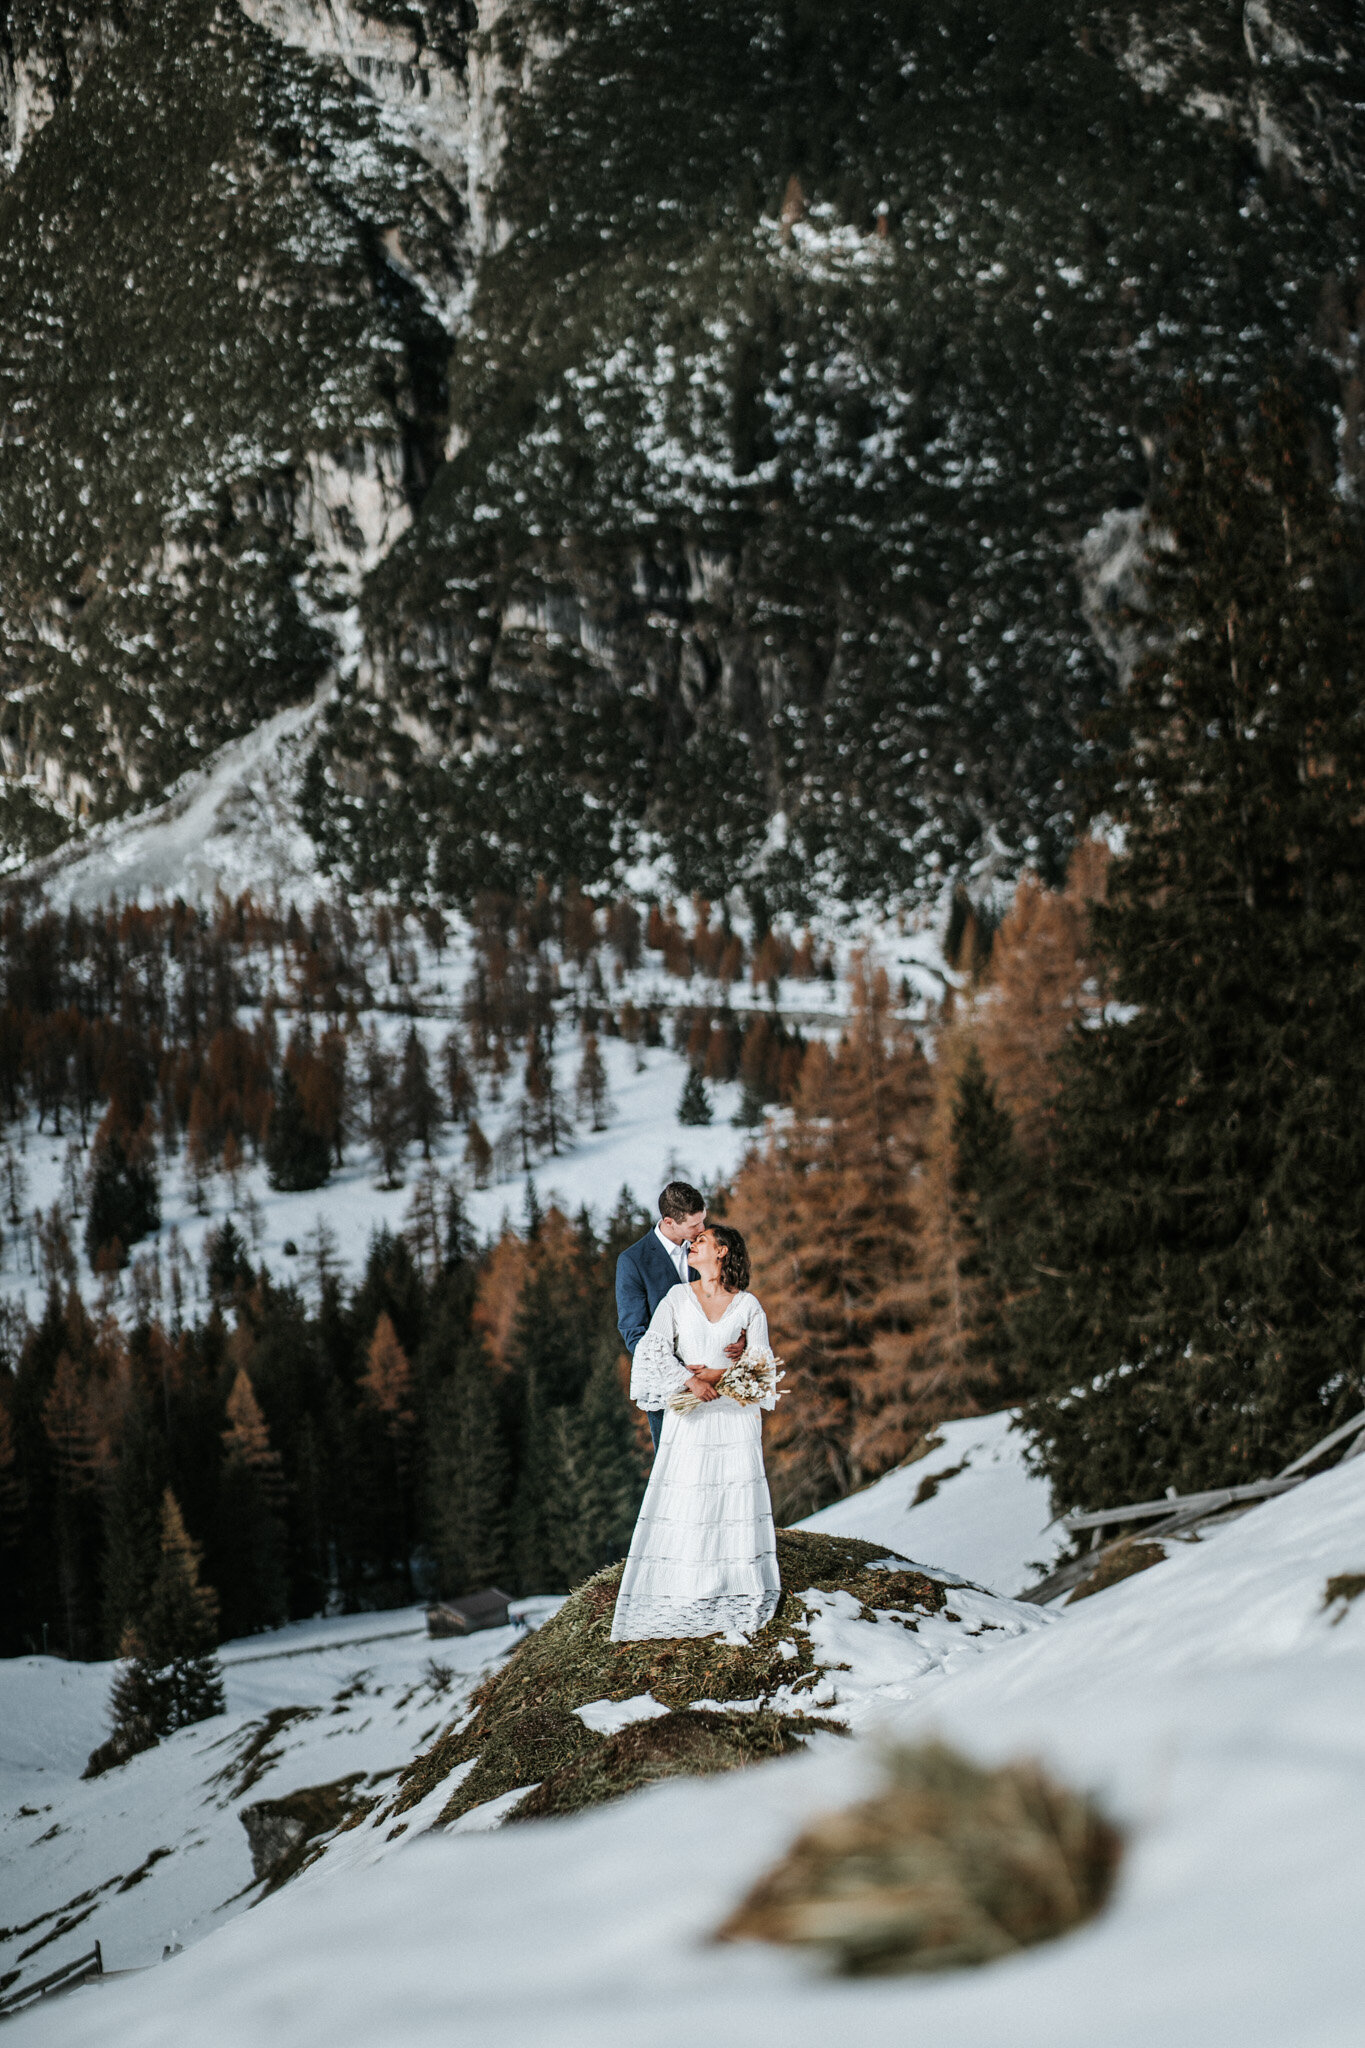 Christina-Biasi-Photography-Scheunenhochzeit-Tirol-Hochzeitsfotograf-6_LR edited_web.jpg